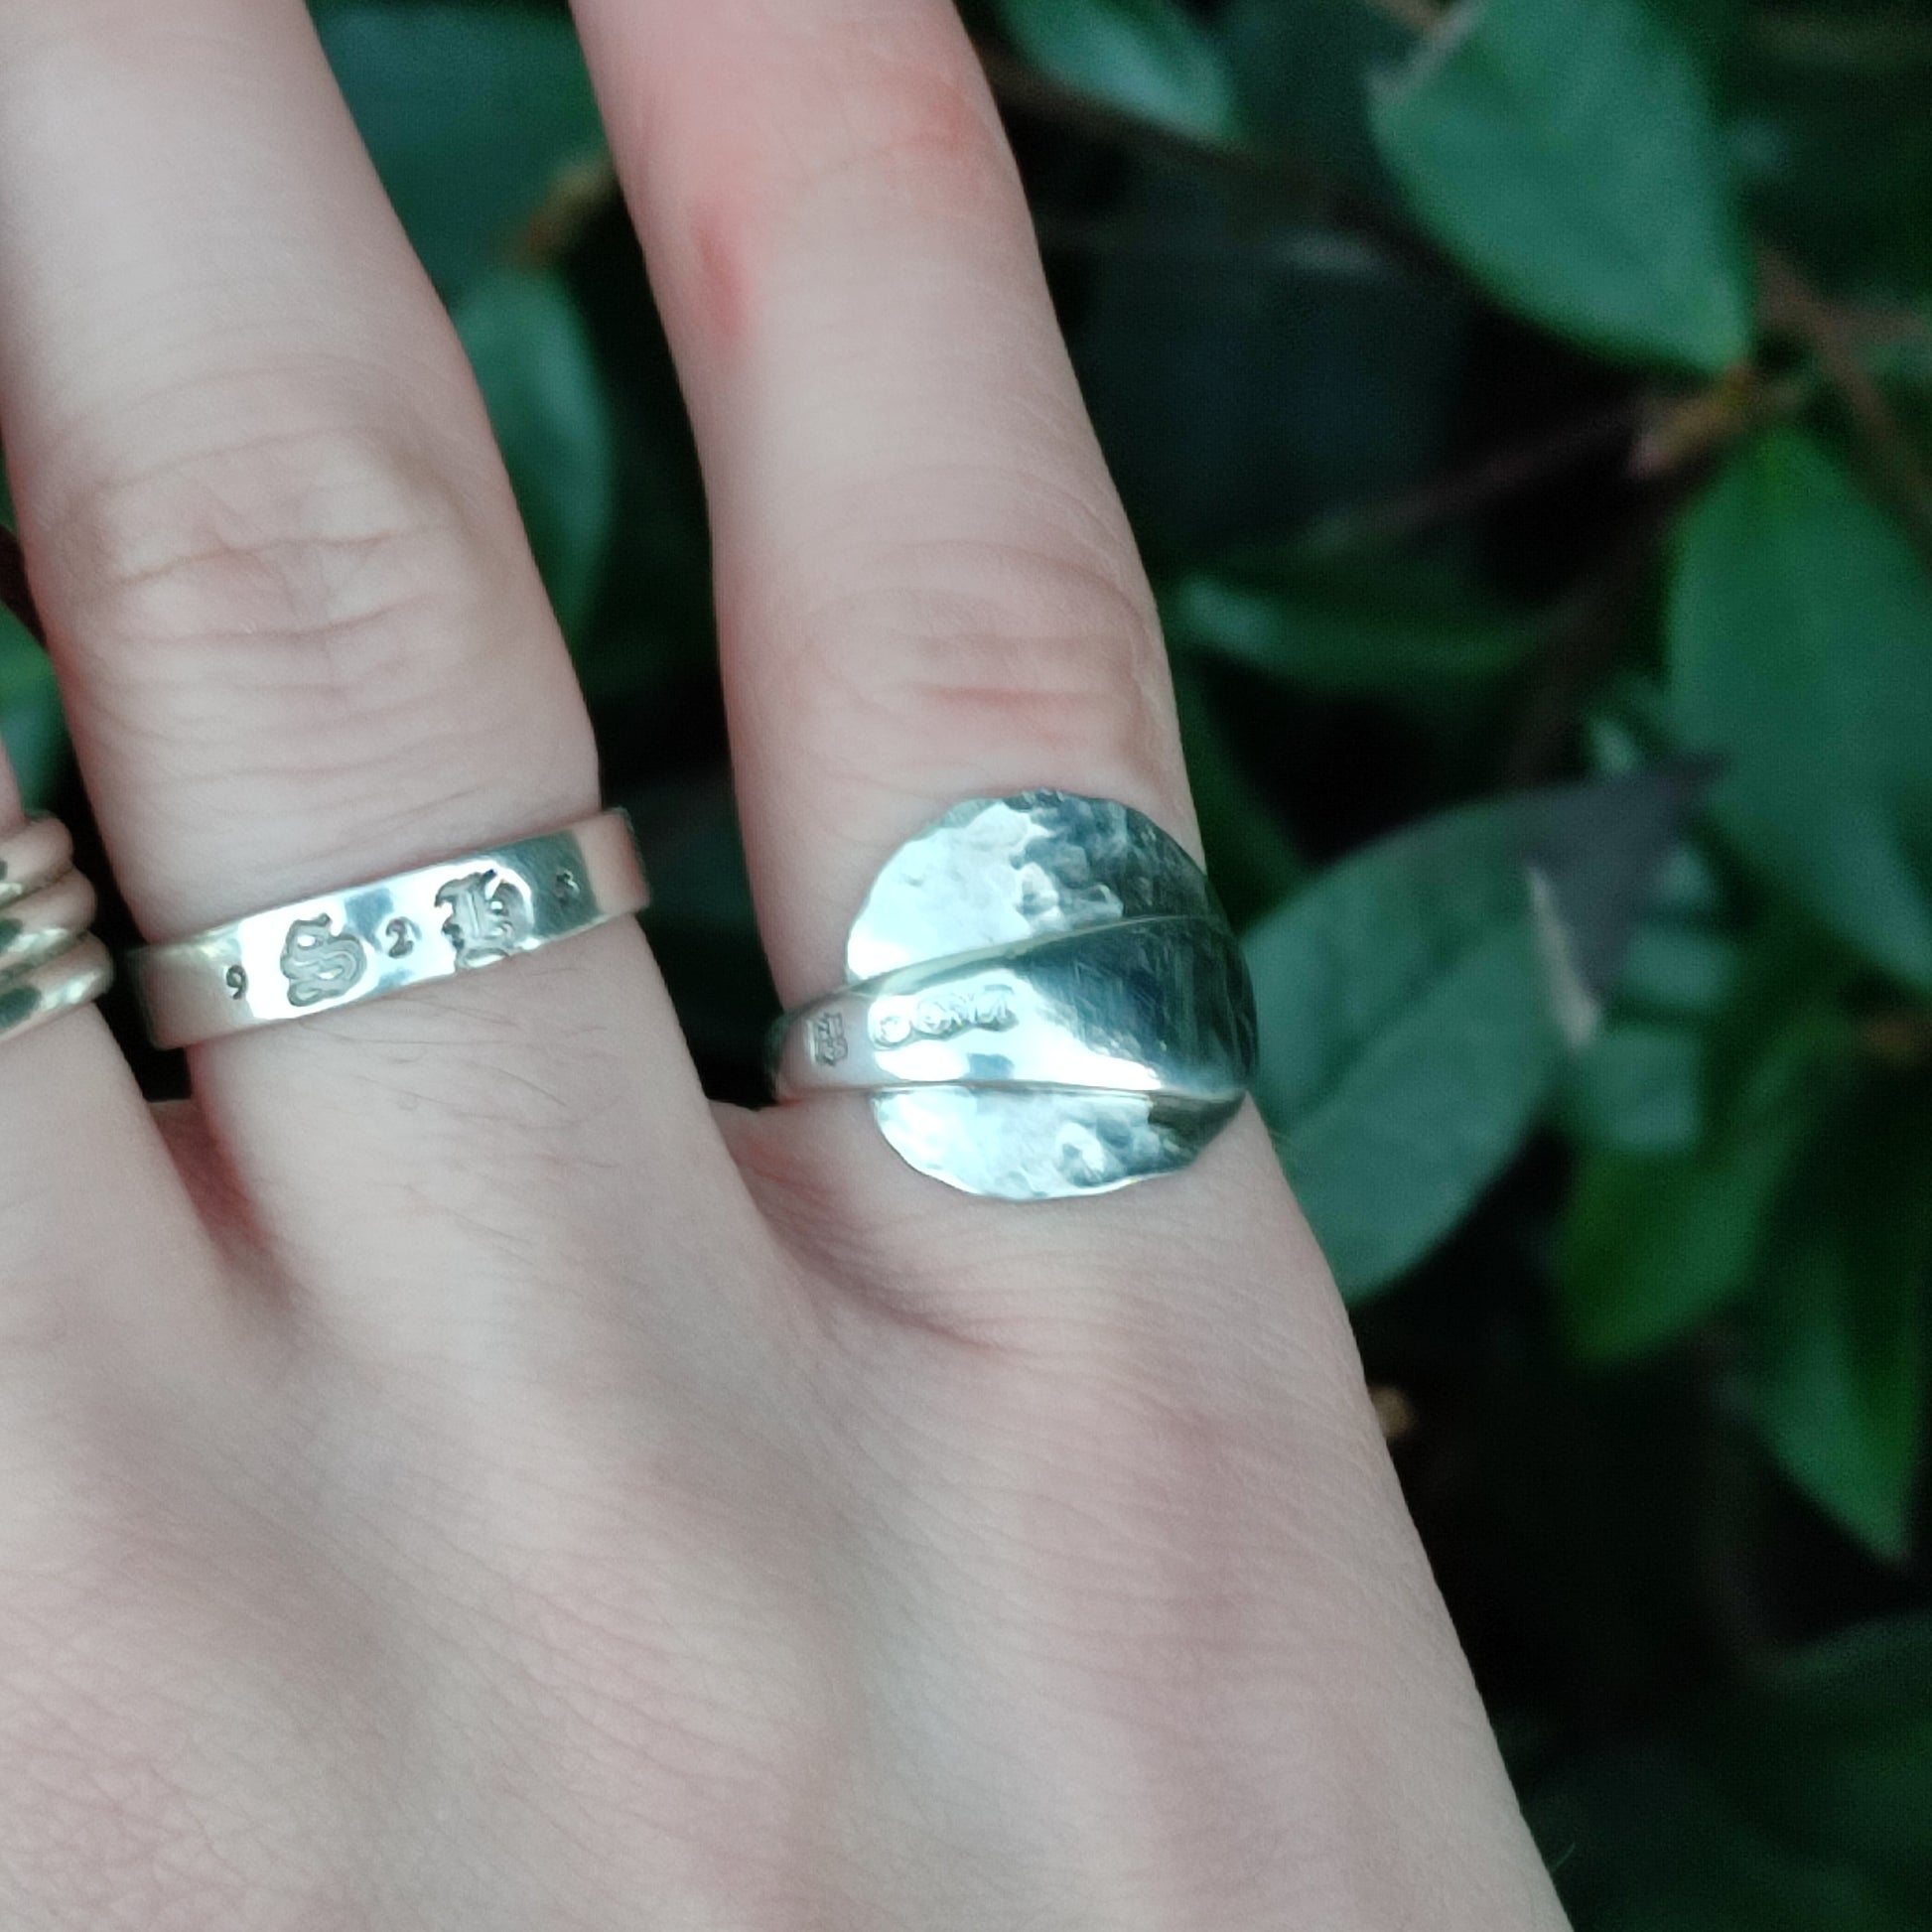 Sterling Silver Spoon Ring - silverhollowjewellery